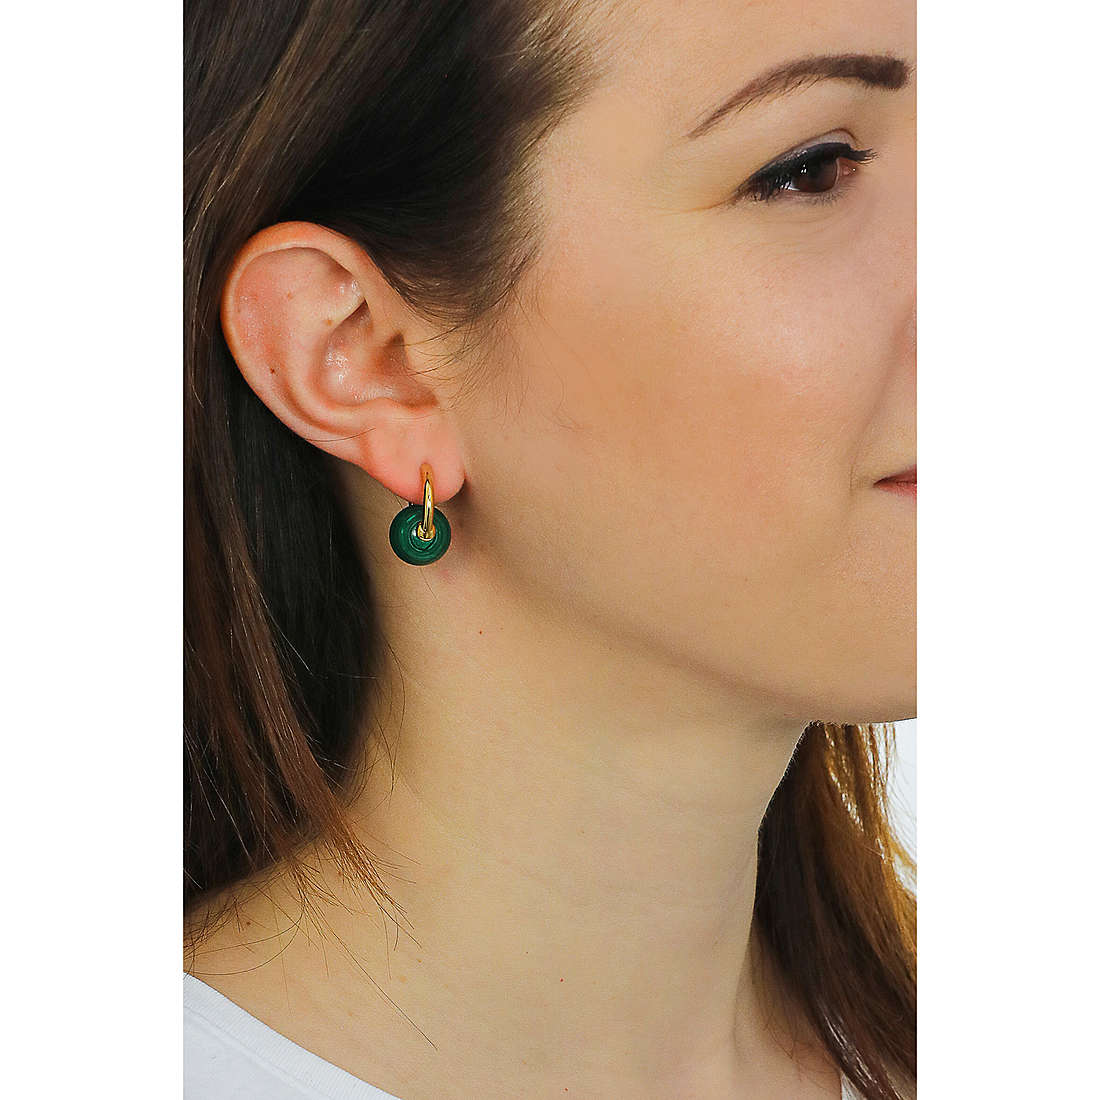 TI SENTO MILANO earrings woman 7850MA wearing